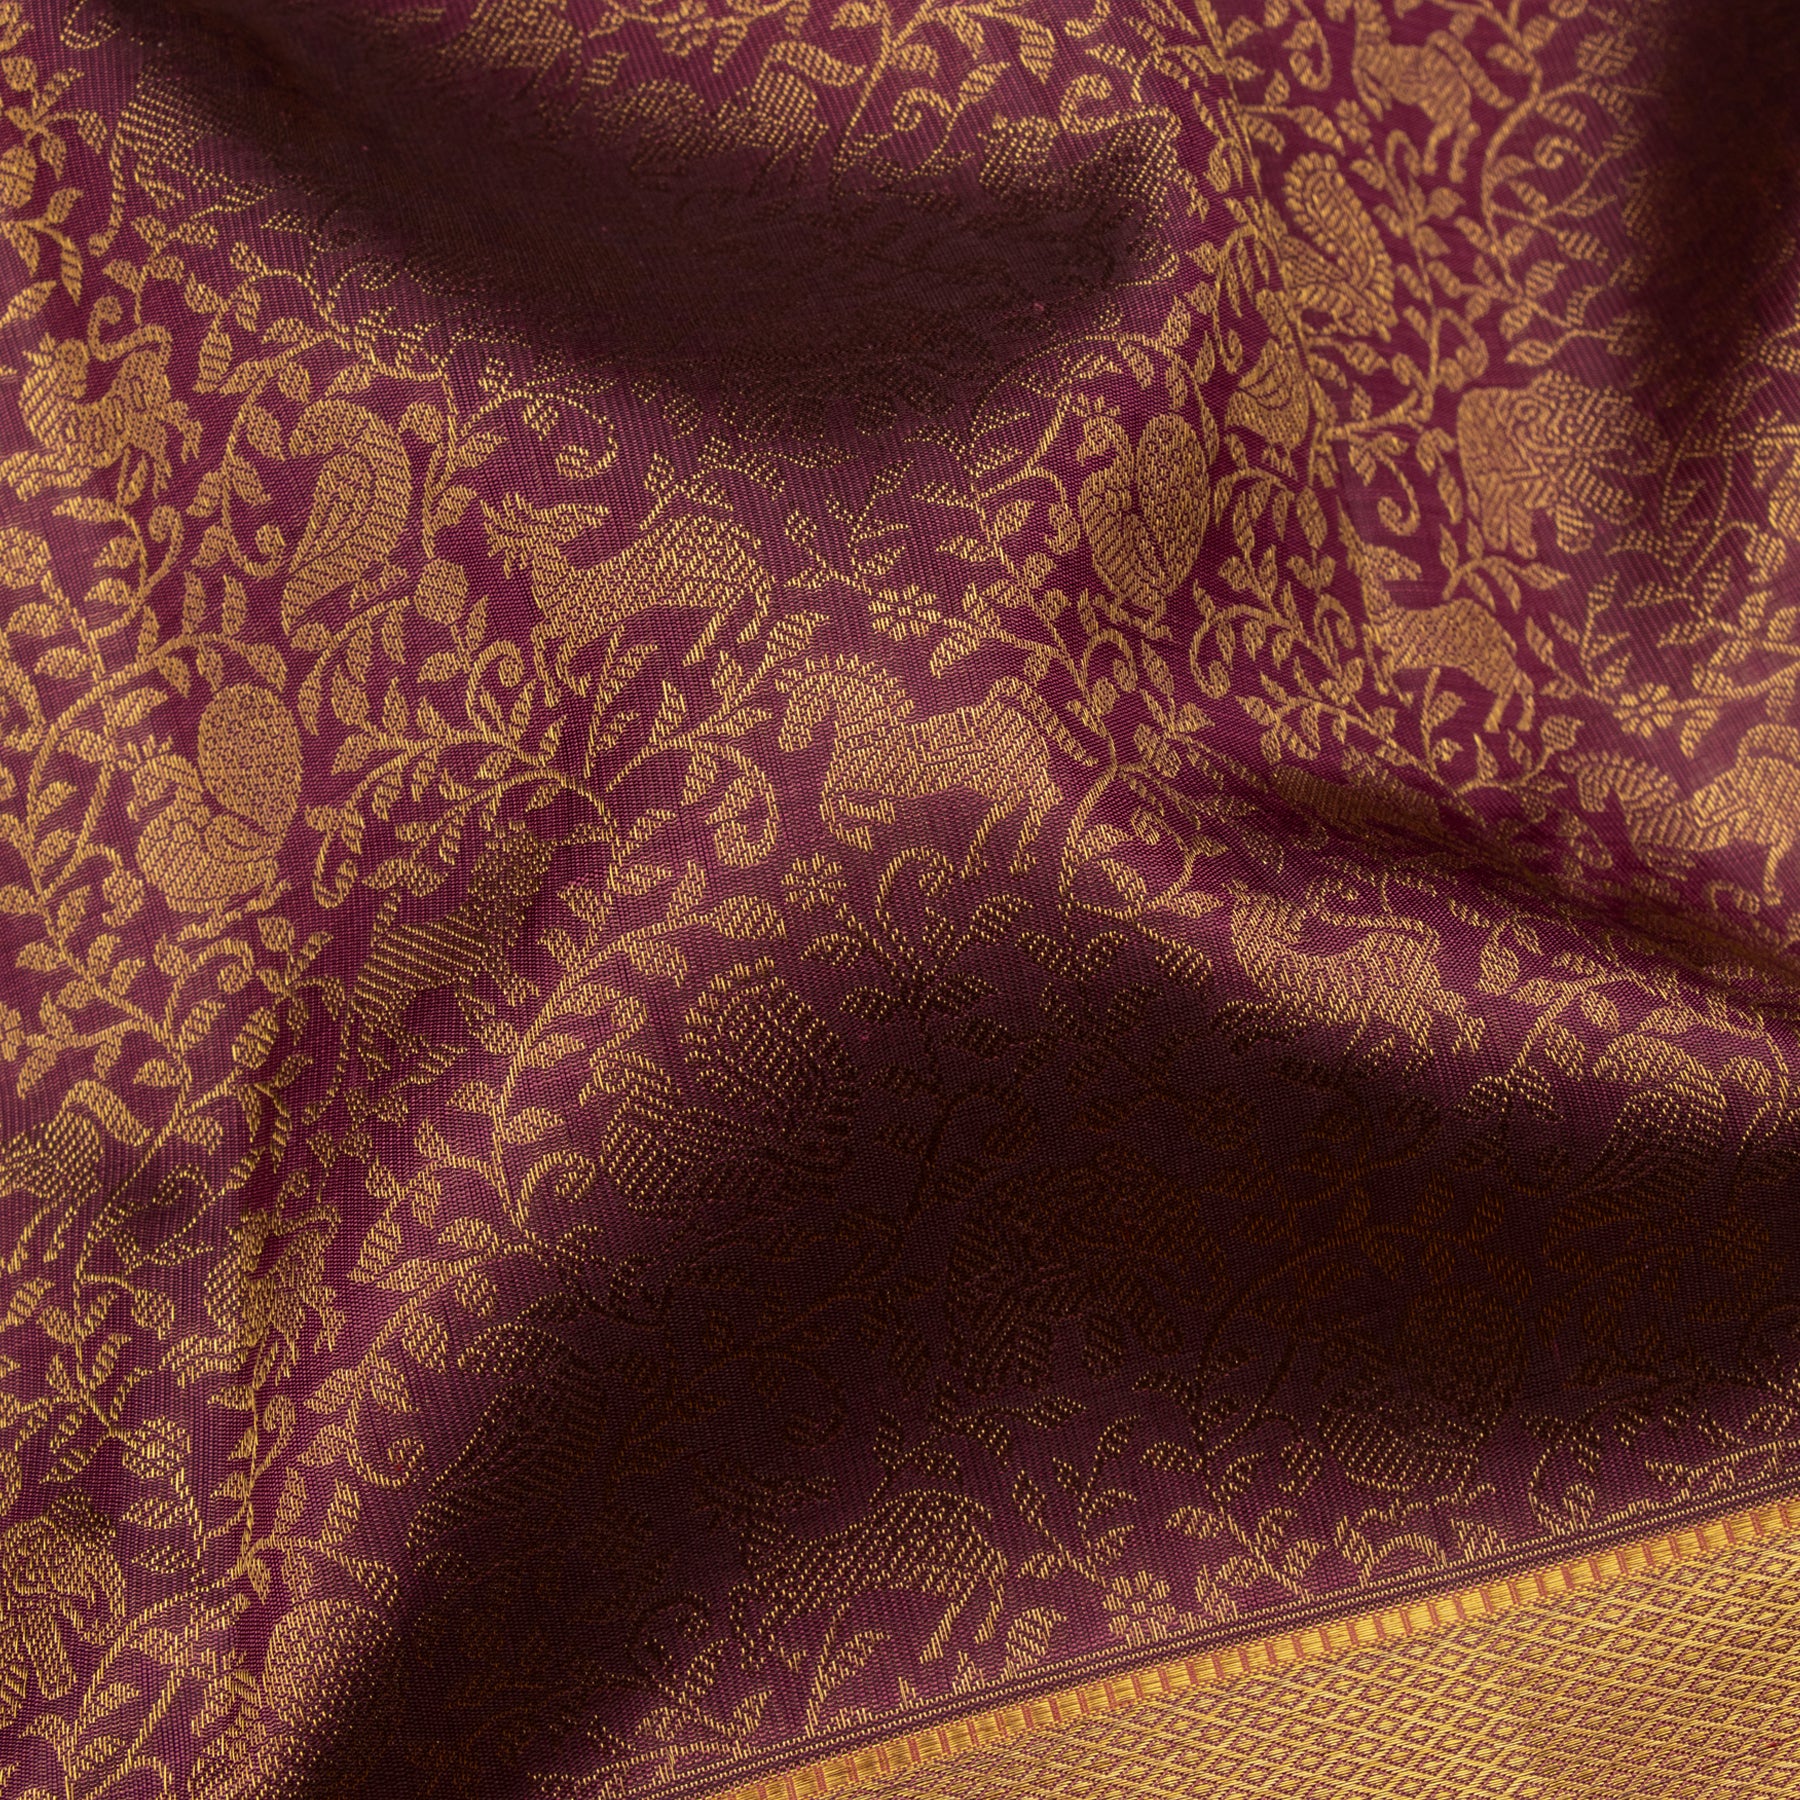 Kanakavalli Kanjivaram Silk Sari 23-110-HS001-13491 - Fabric View